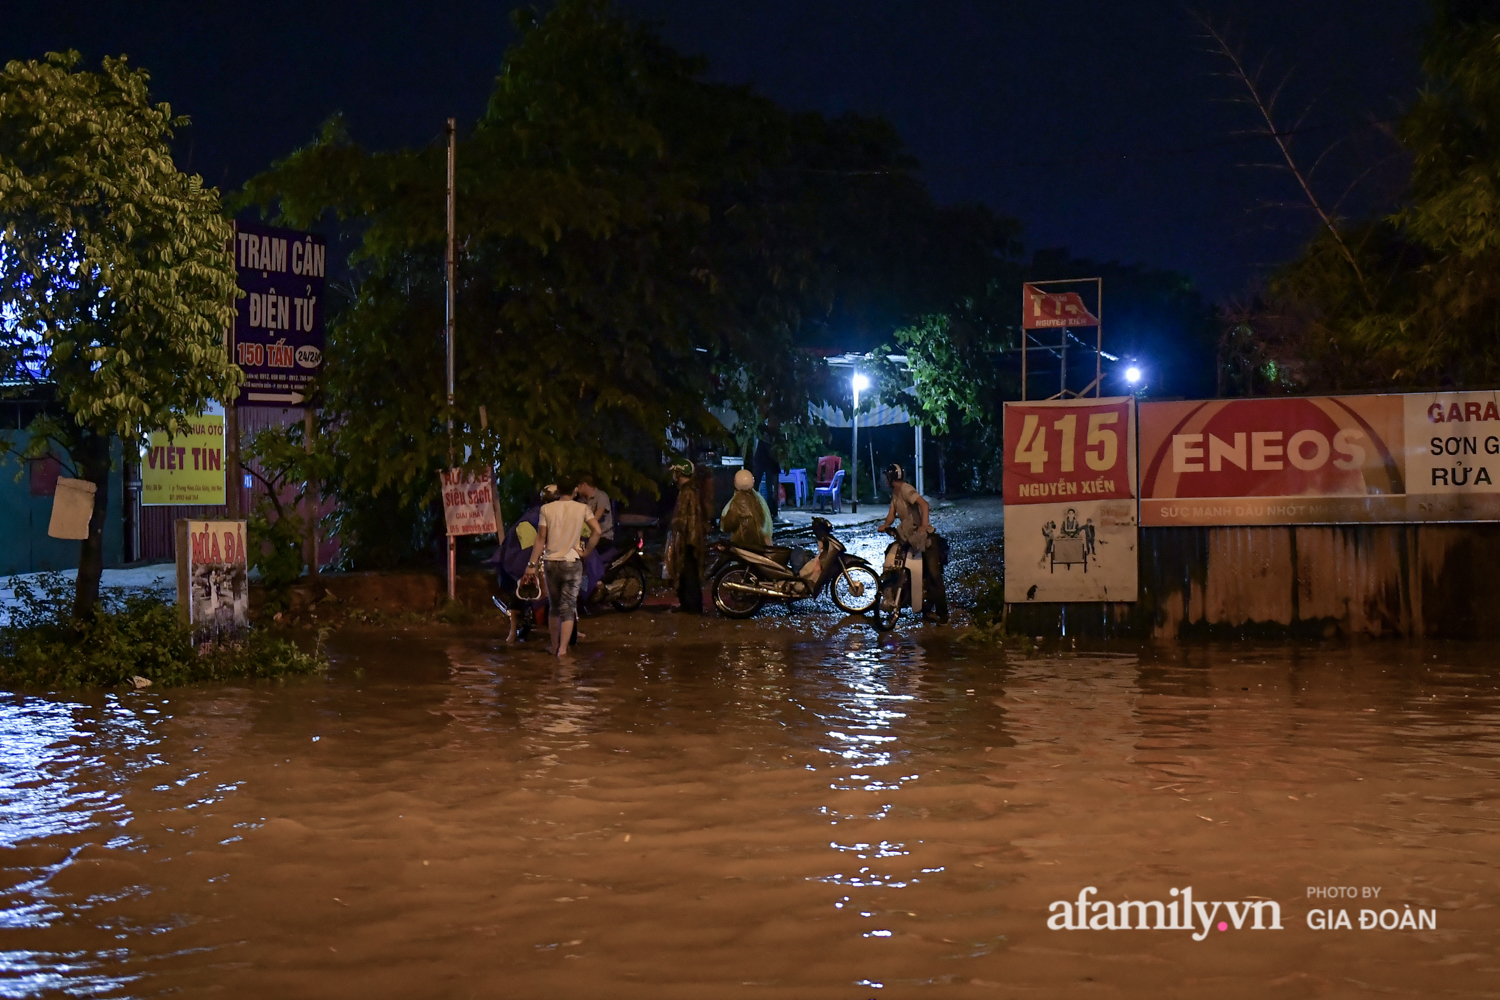 Mưa lớn chưa đầy 1 giờ đồng hồ, đường phố Hà Nội ngập như sông - Ảnh 1.